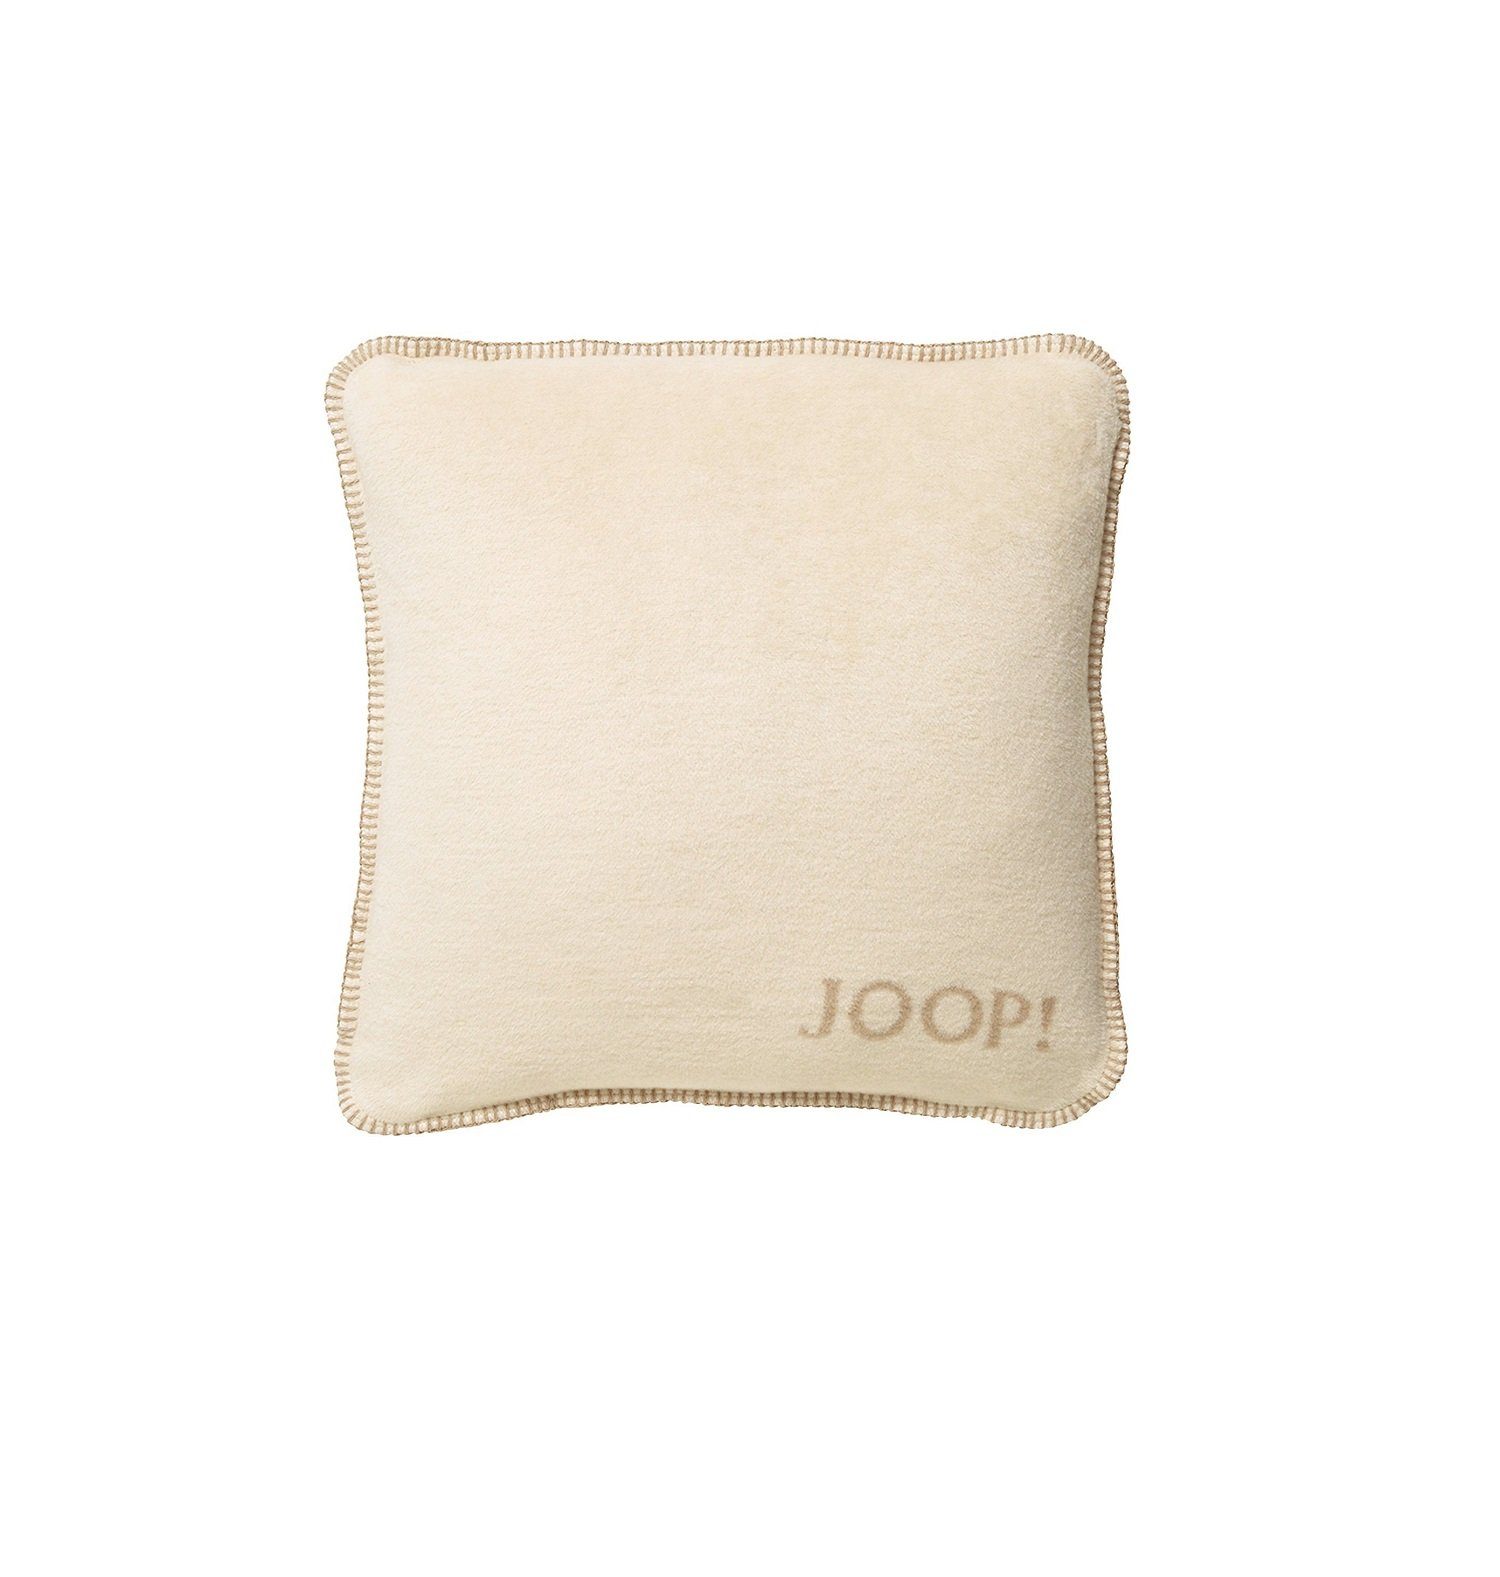 Kissenhülle JOOP! Kissenhülle Uni-Doubleface Fleece Qualität, Joop!, weiche Fleece Qualität, Reißverschluss auf der Rückseite Pergament-Sand